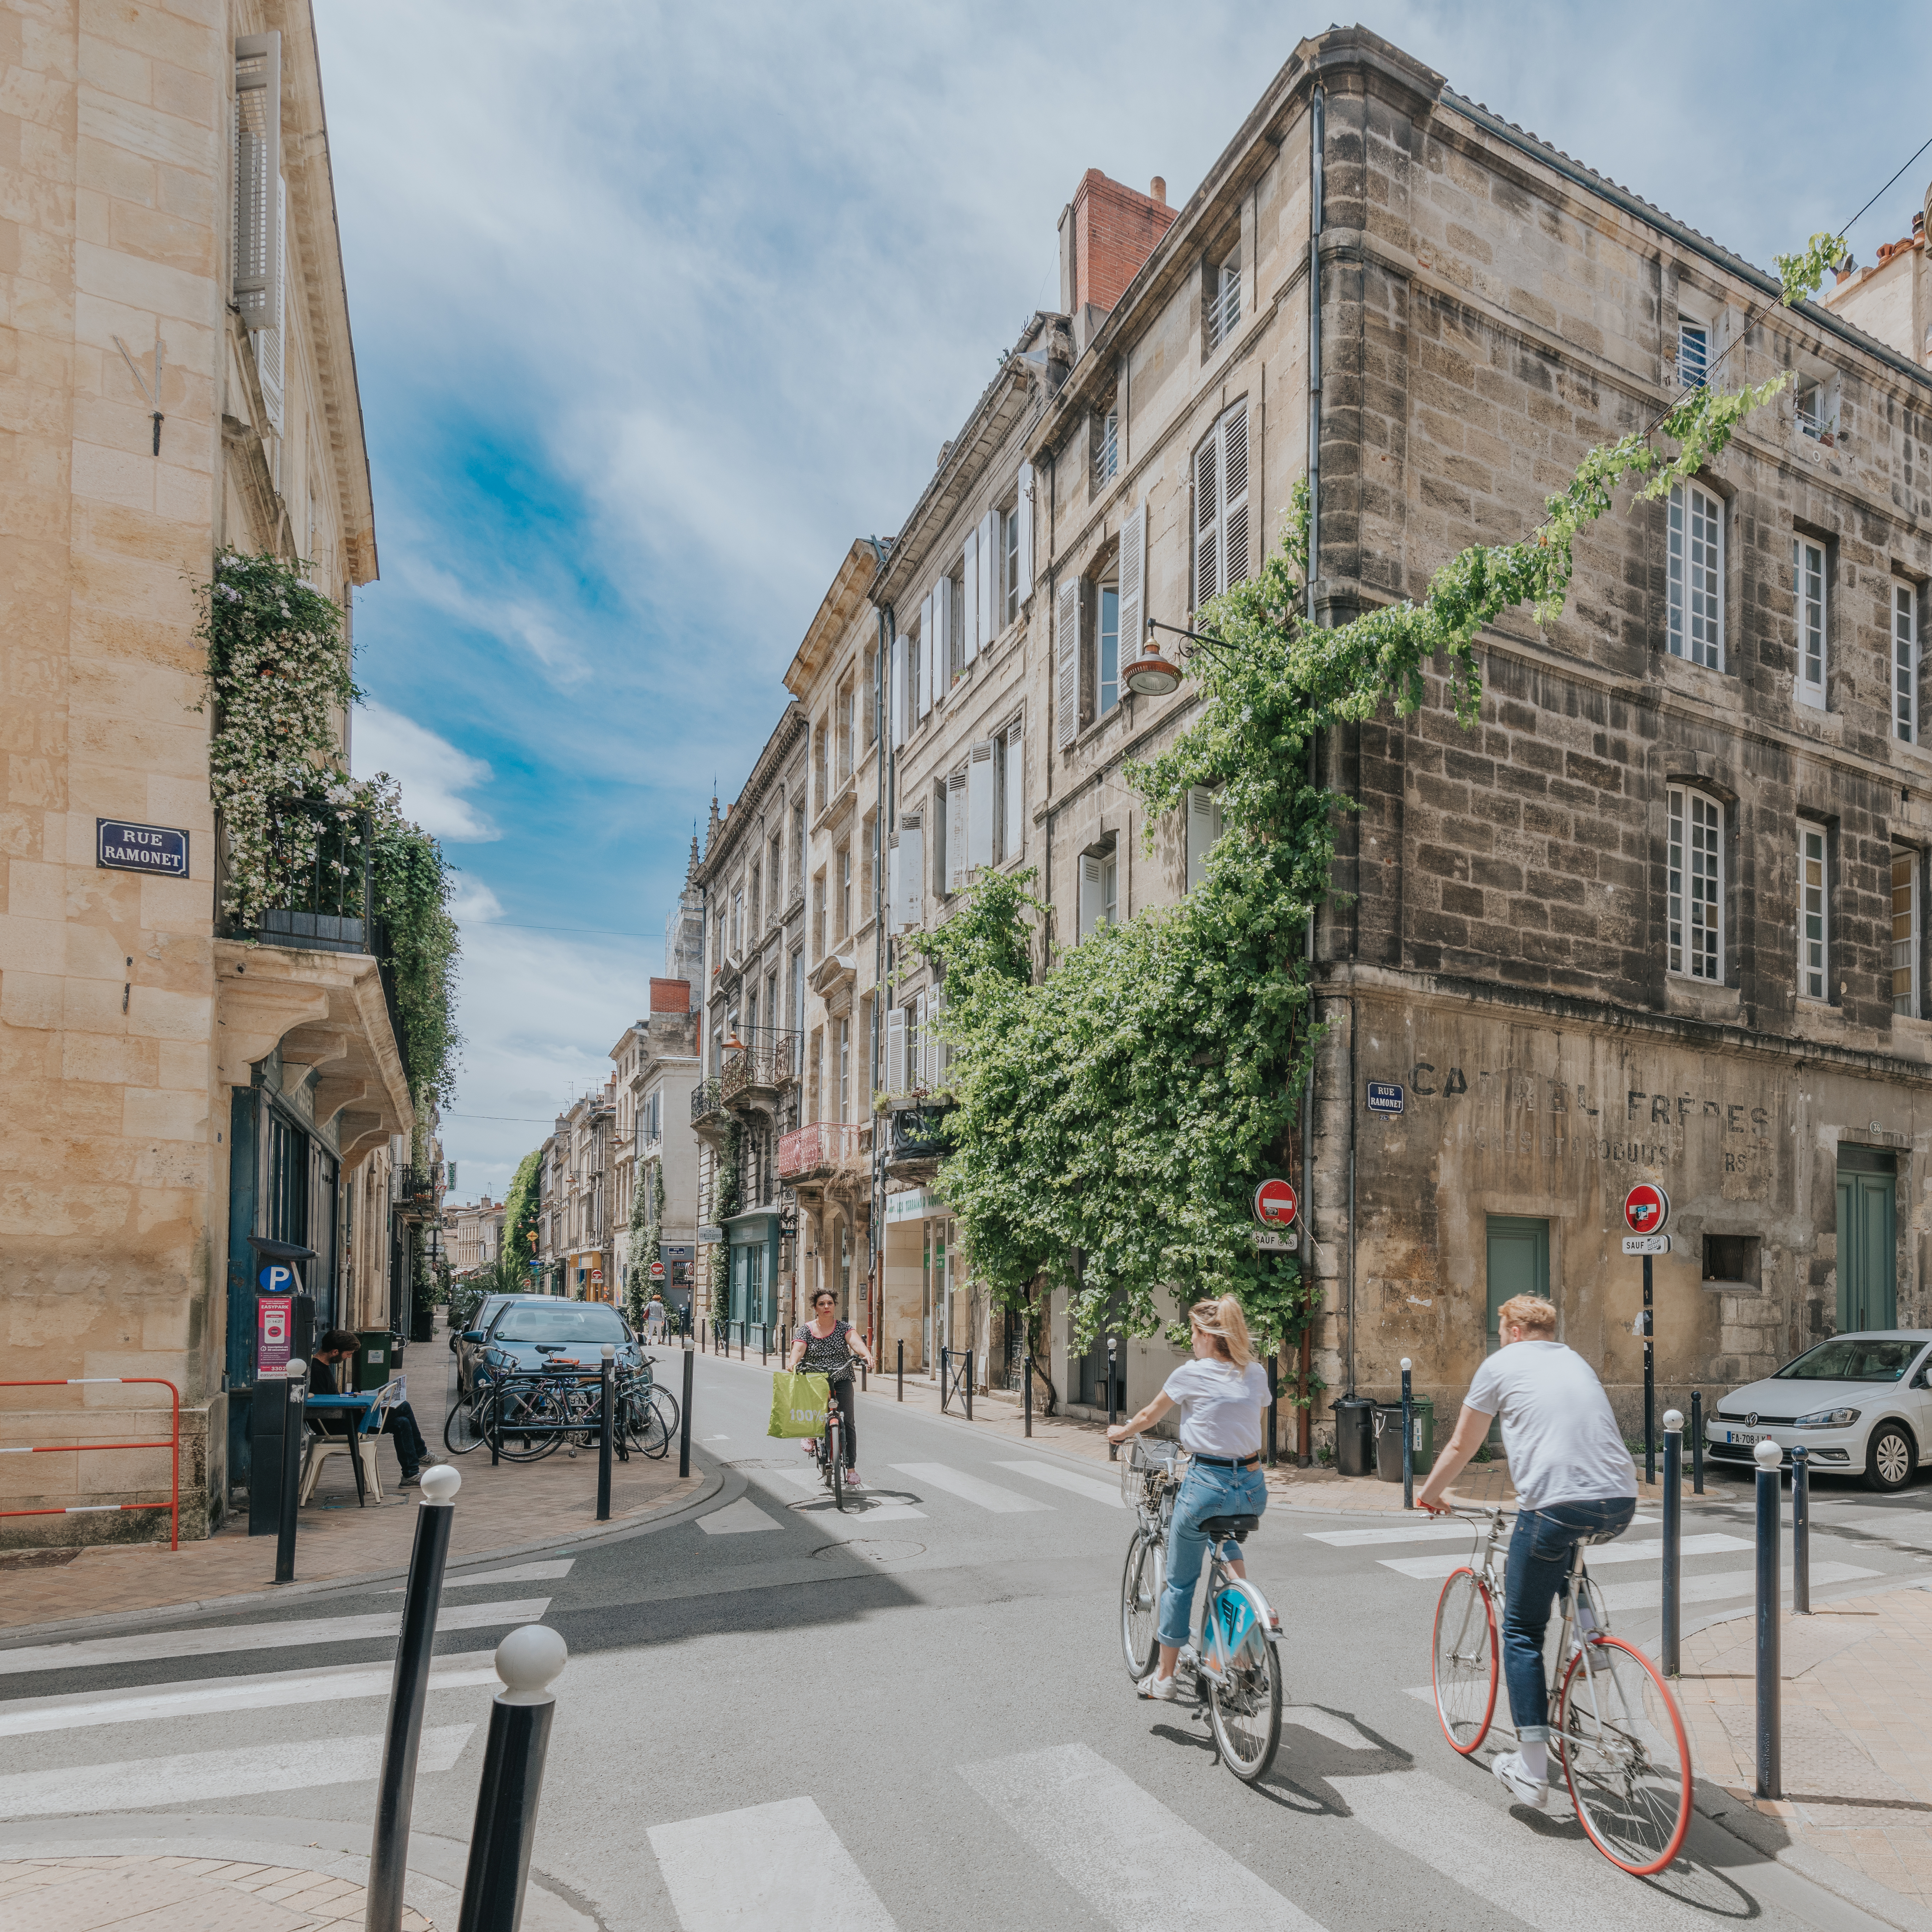 The cobblestone street of Rue Notre Dame (photo ©Nicolas Duffaure).